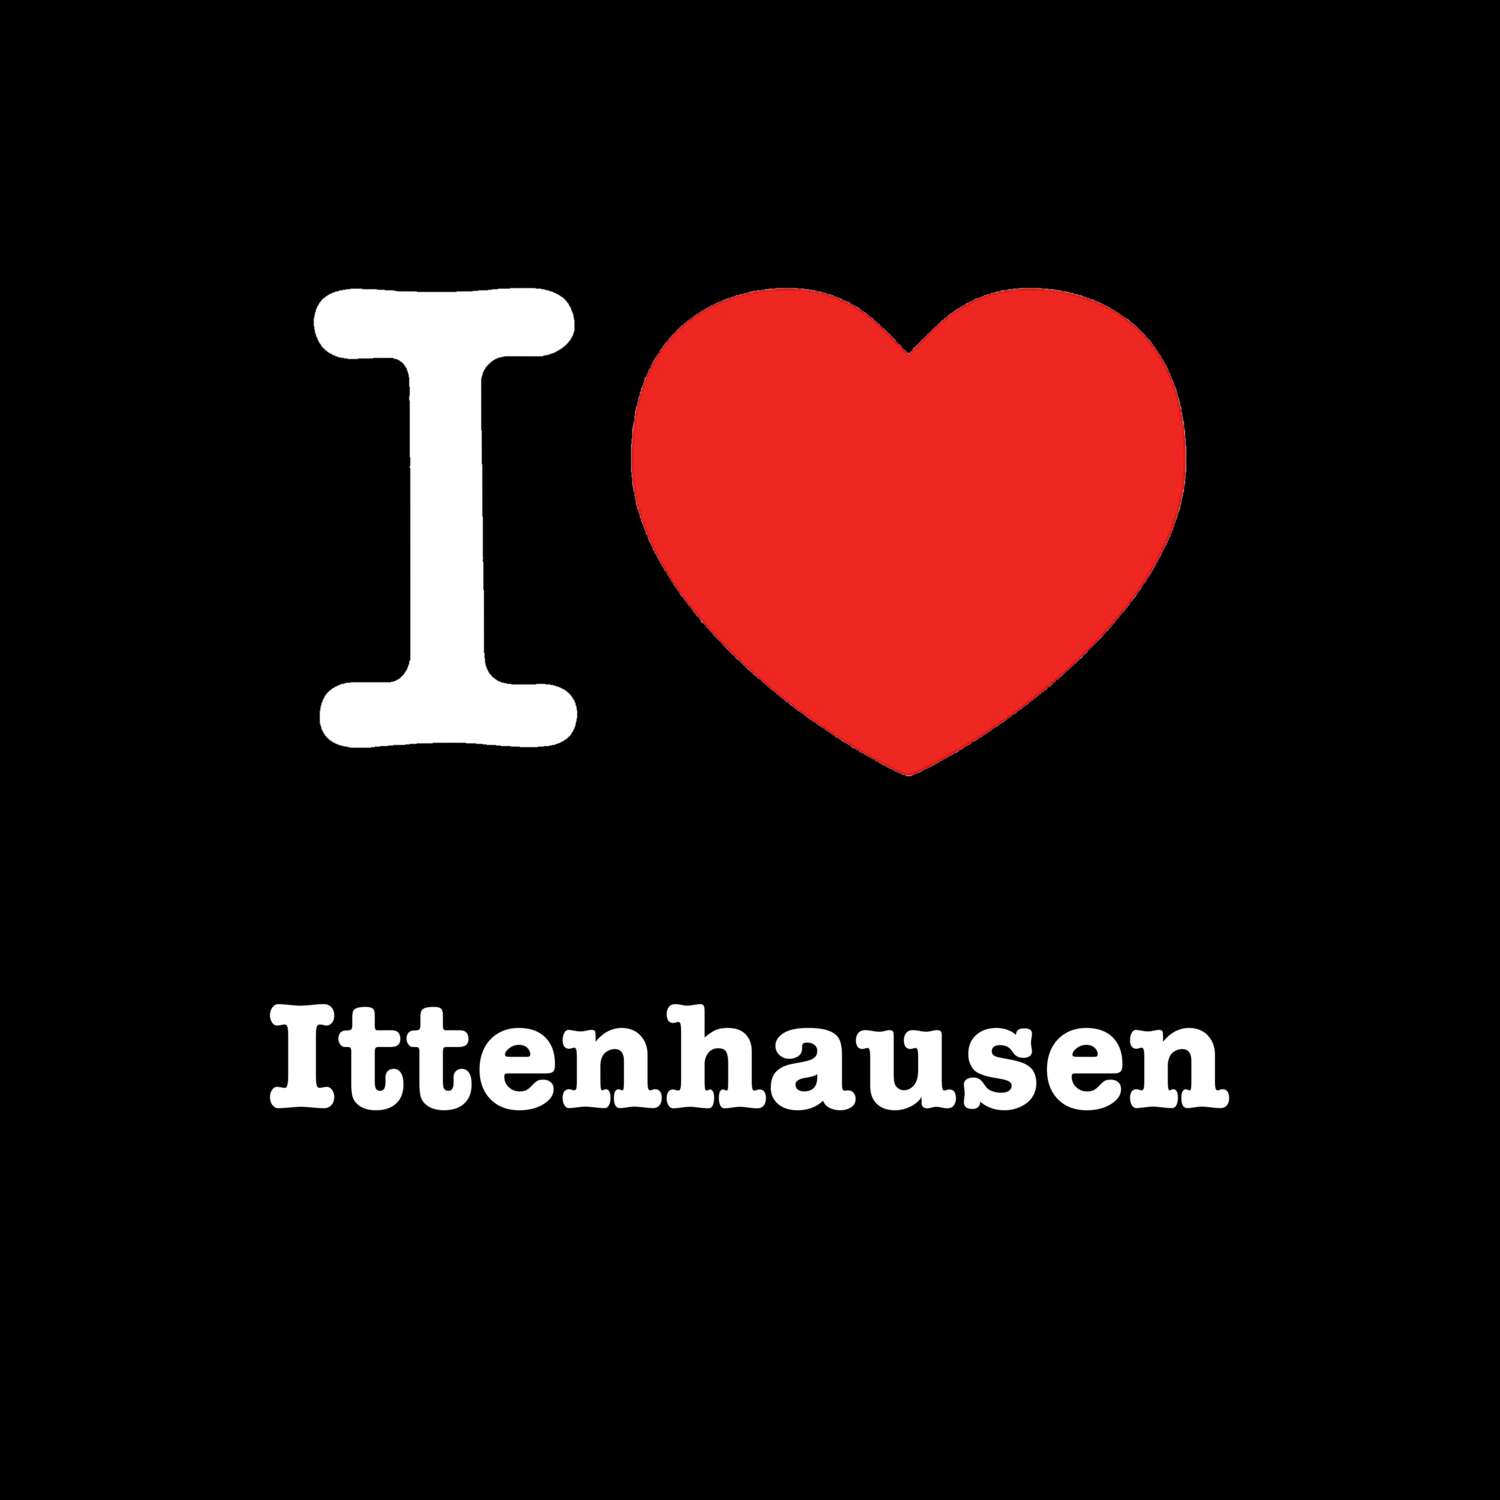 Ittenhausen T-Shirt »I love«